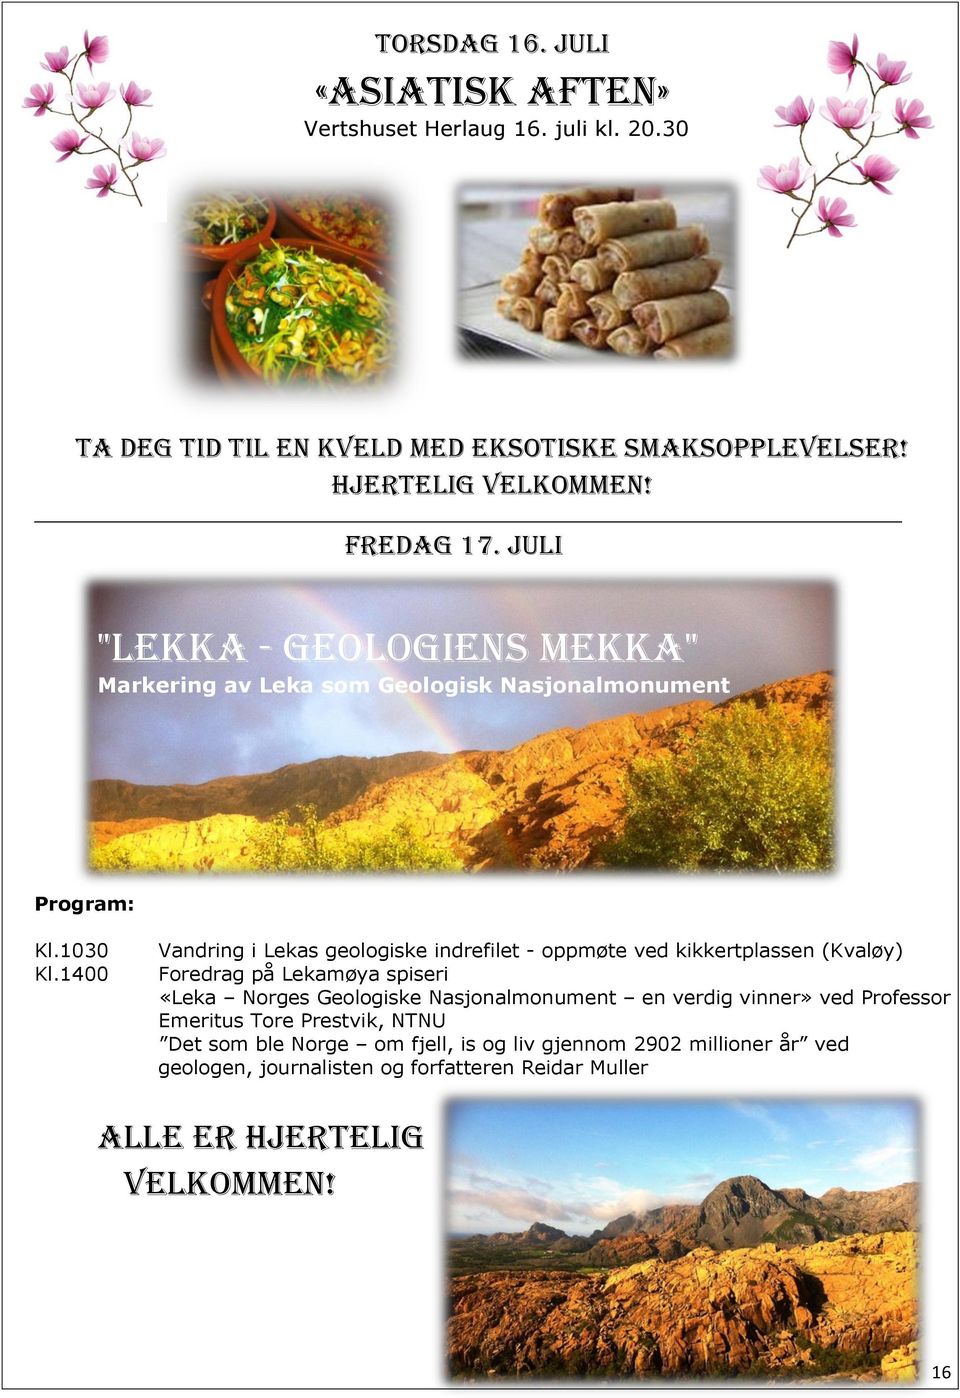 1400 Vandring i Lekas geologiske indrefilet - oppmøte ved kikkertplassen (Kvaløy) Foredrag på Lekamøya spiseri «Leka Norges Geologiske Nasjonalmonument en